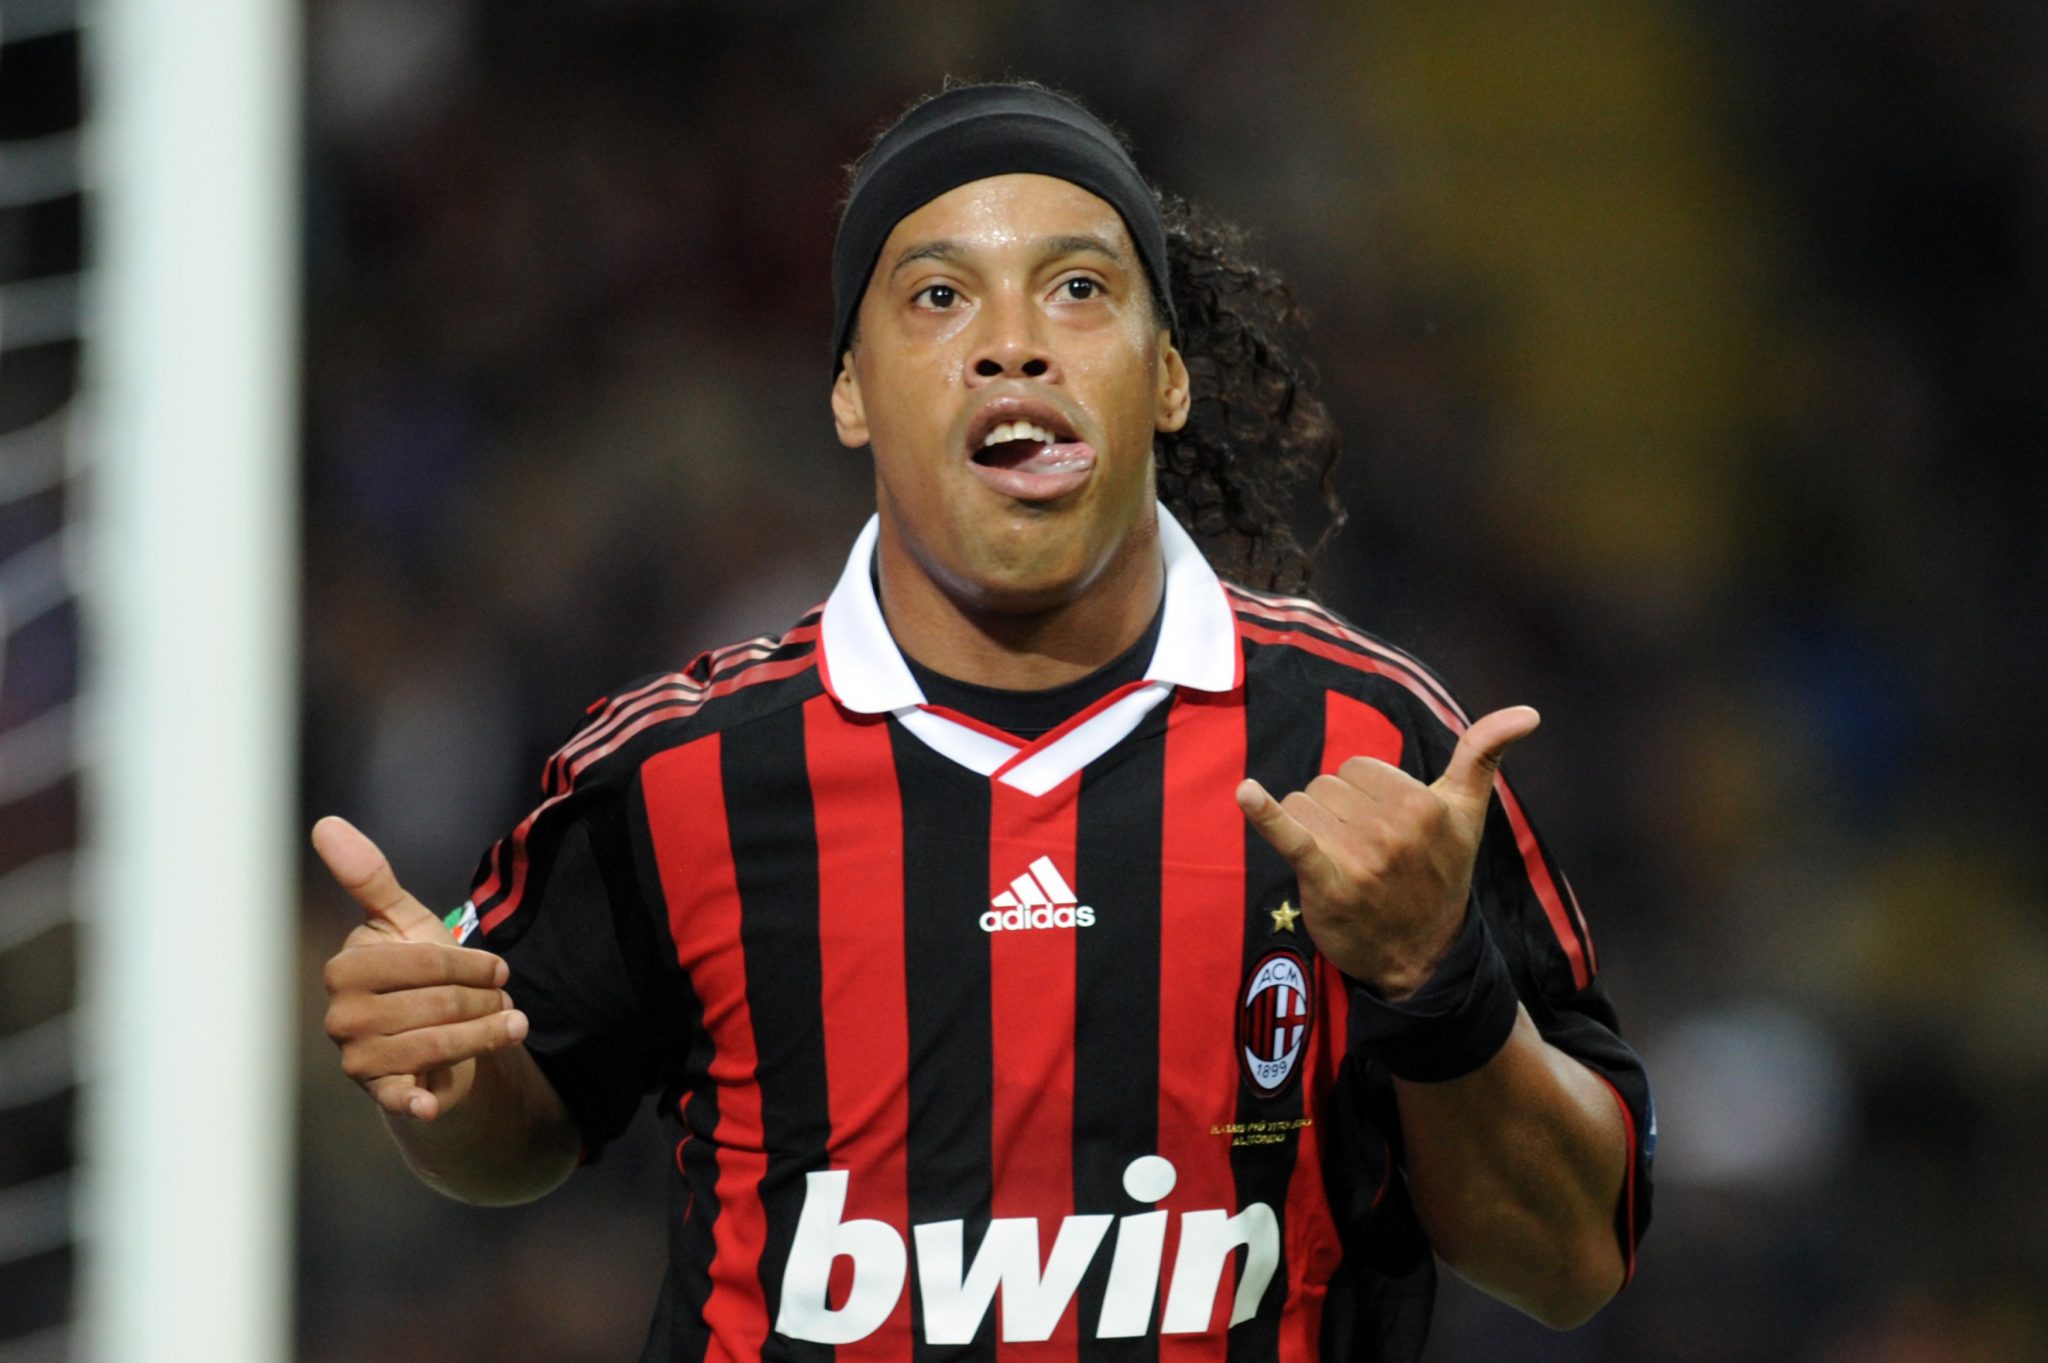 9º - Ronaldinho Gaúcho - Milan (2008) - 40 mil pessoas